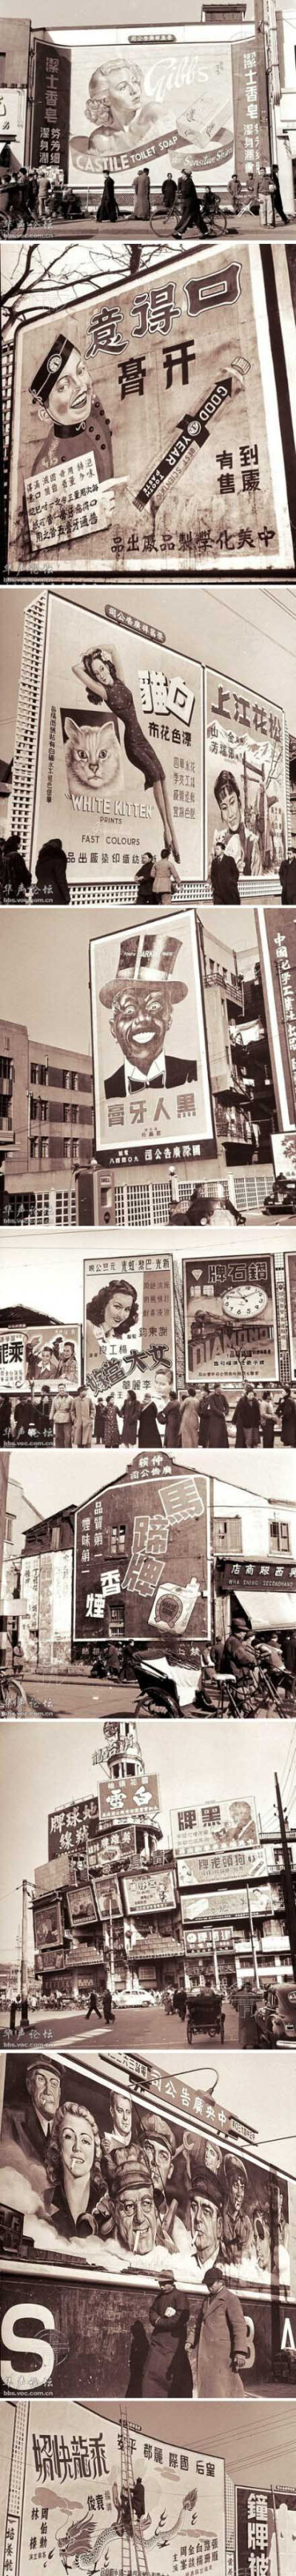 1948年上海靓丽的街头广告。那时候的字体特别好看。